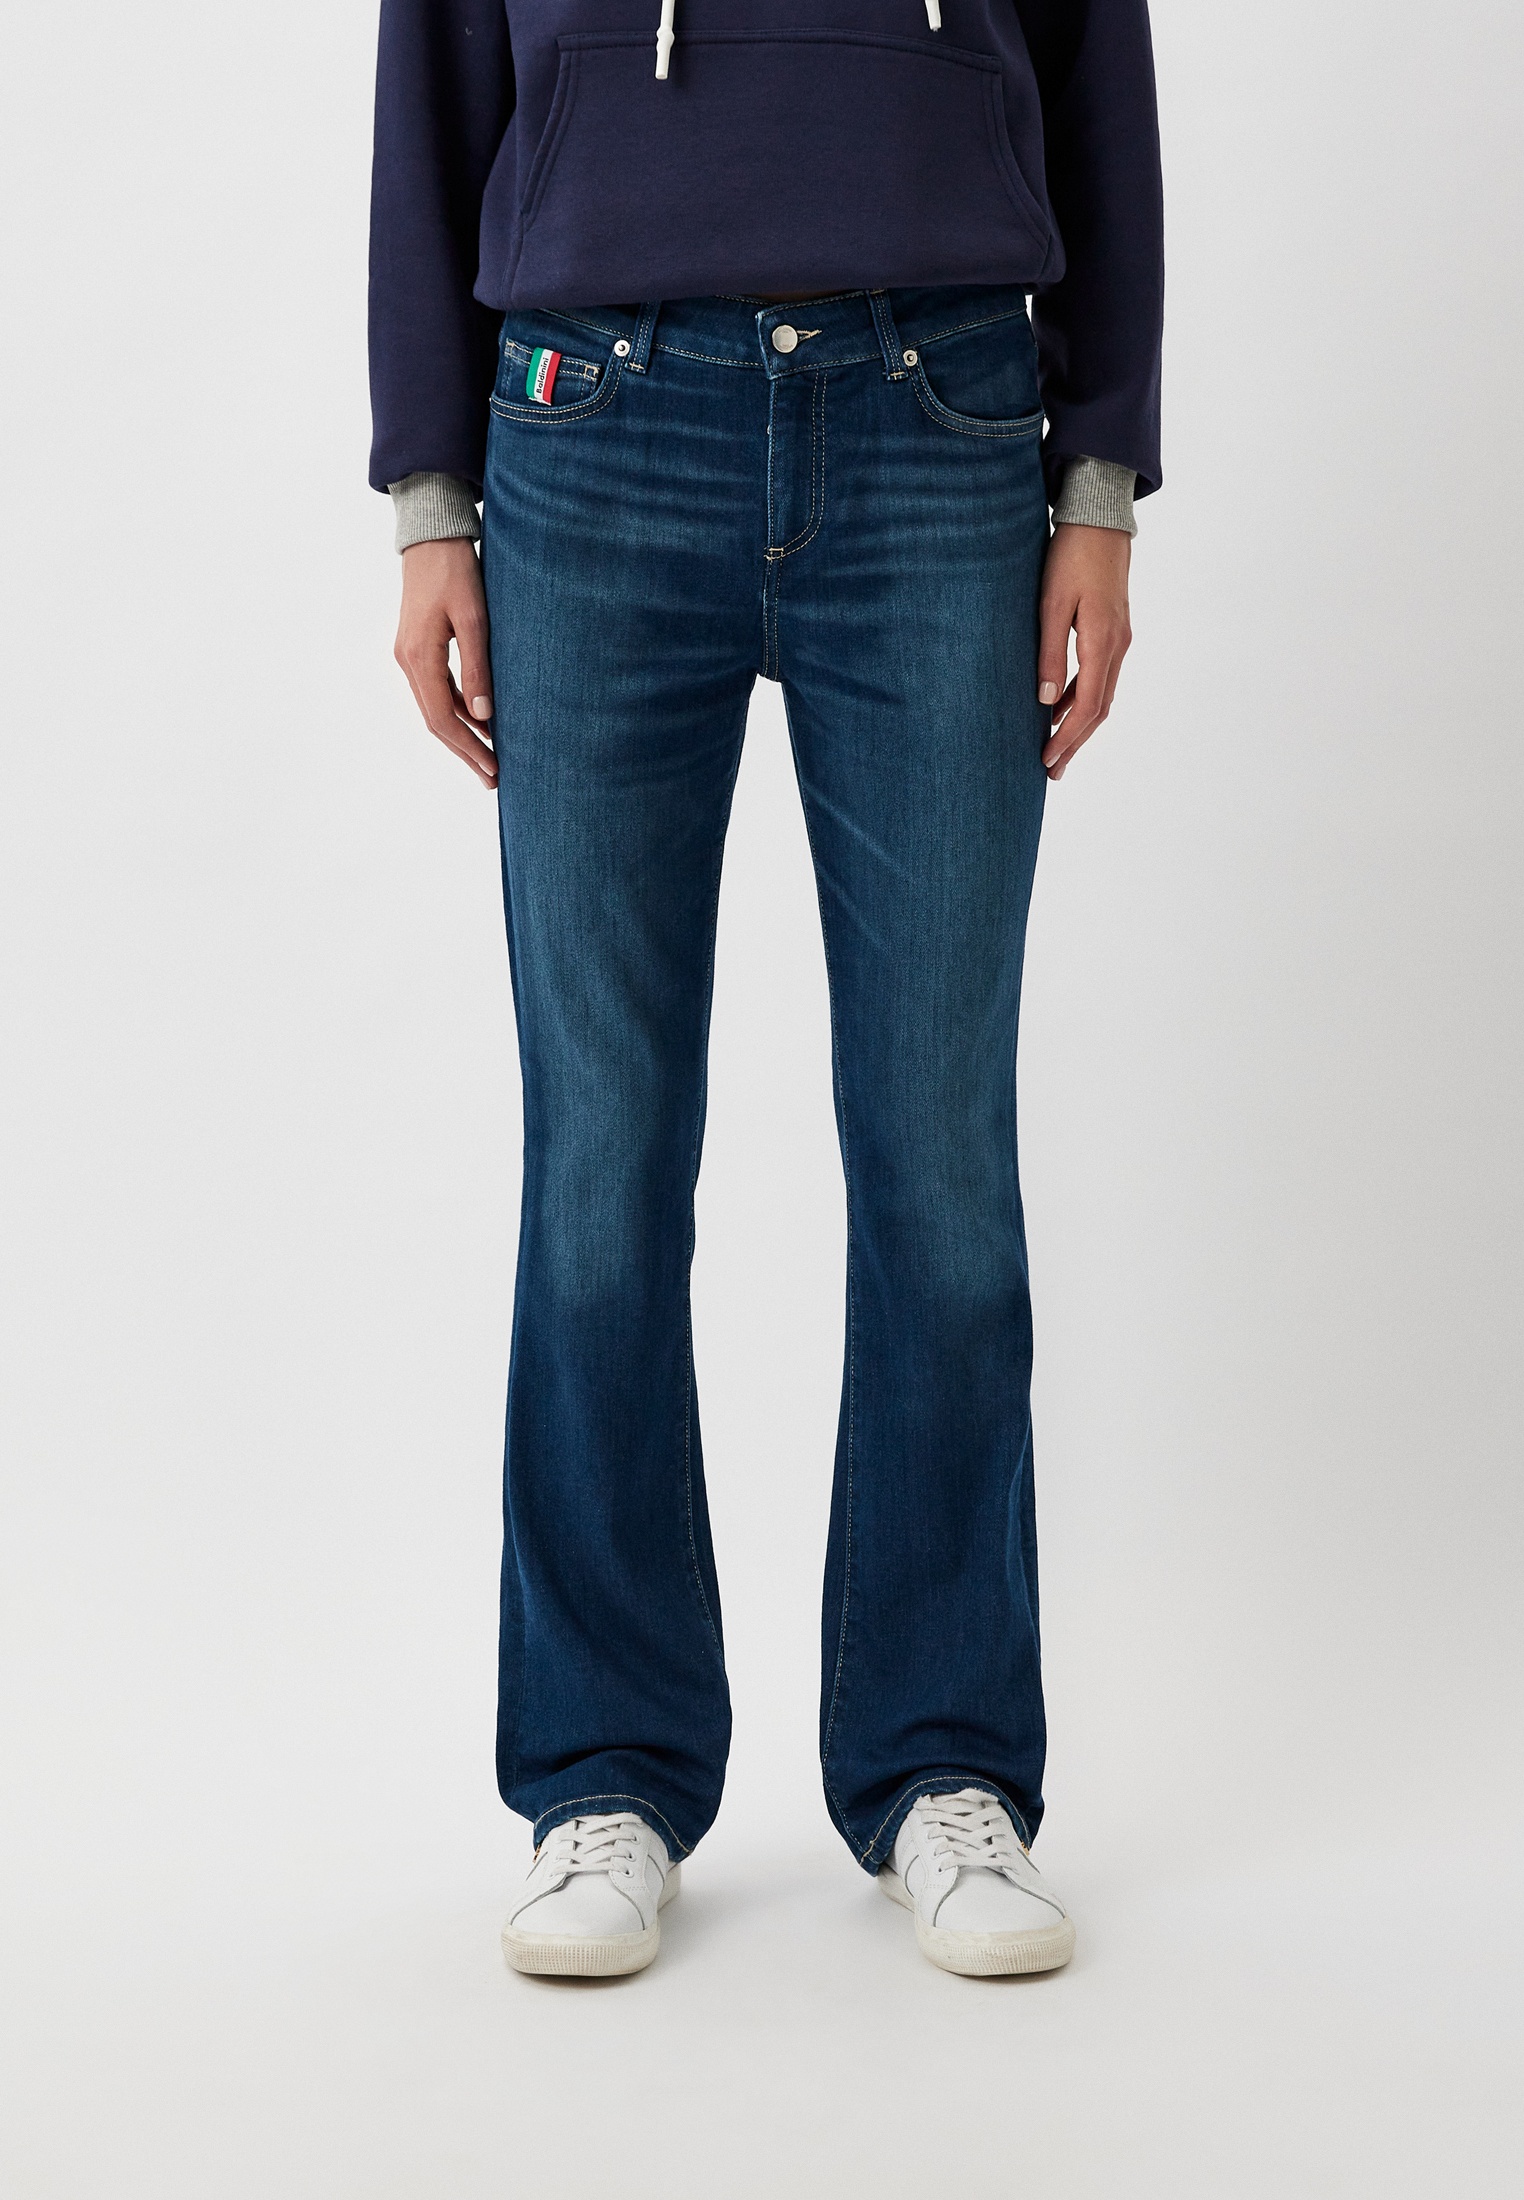 Широкие и расклешенные джинсы Baldinini Trend (Балдинини Тренд) T9113ALBA